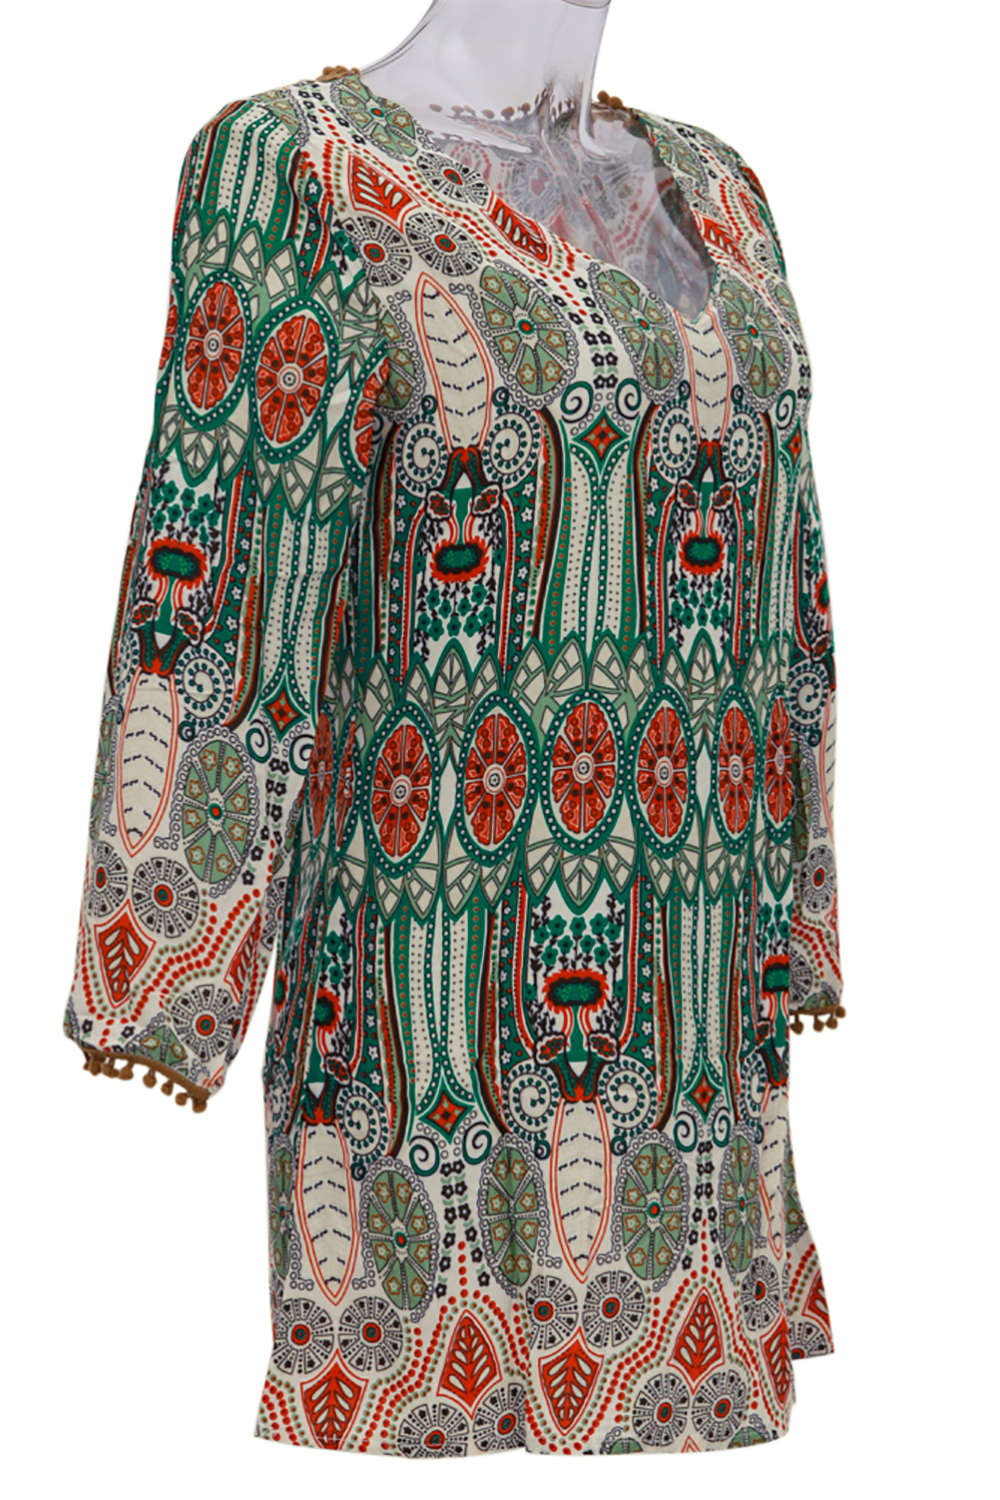 Iyasson Women Bohemian Long Sleeve Casual Tunic Dress